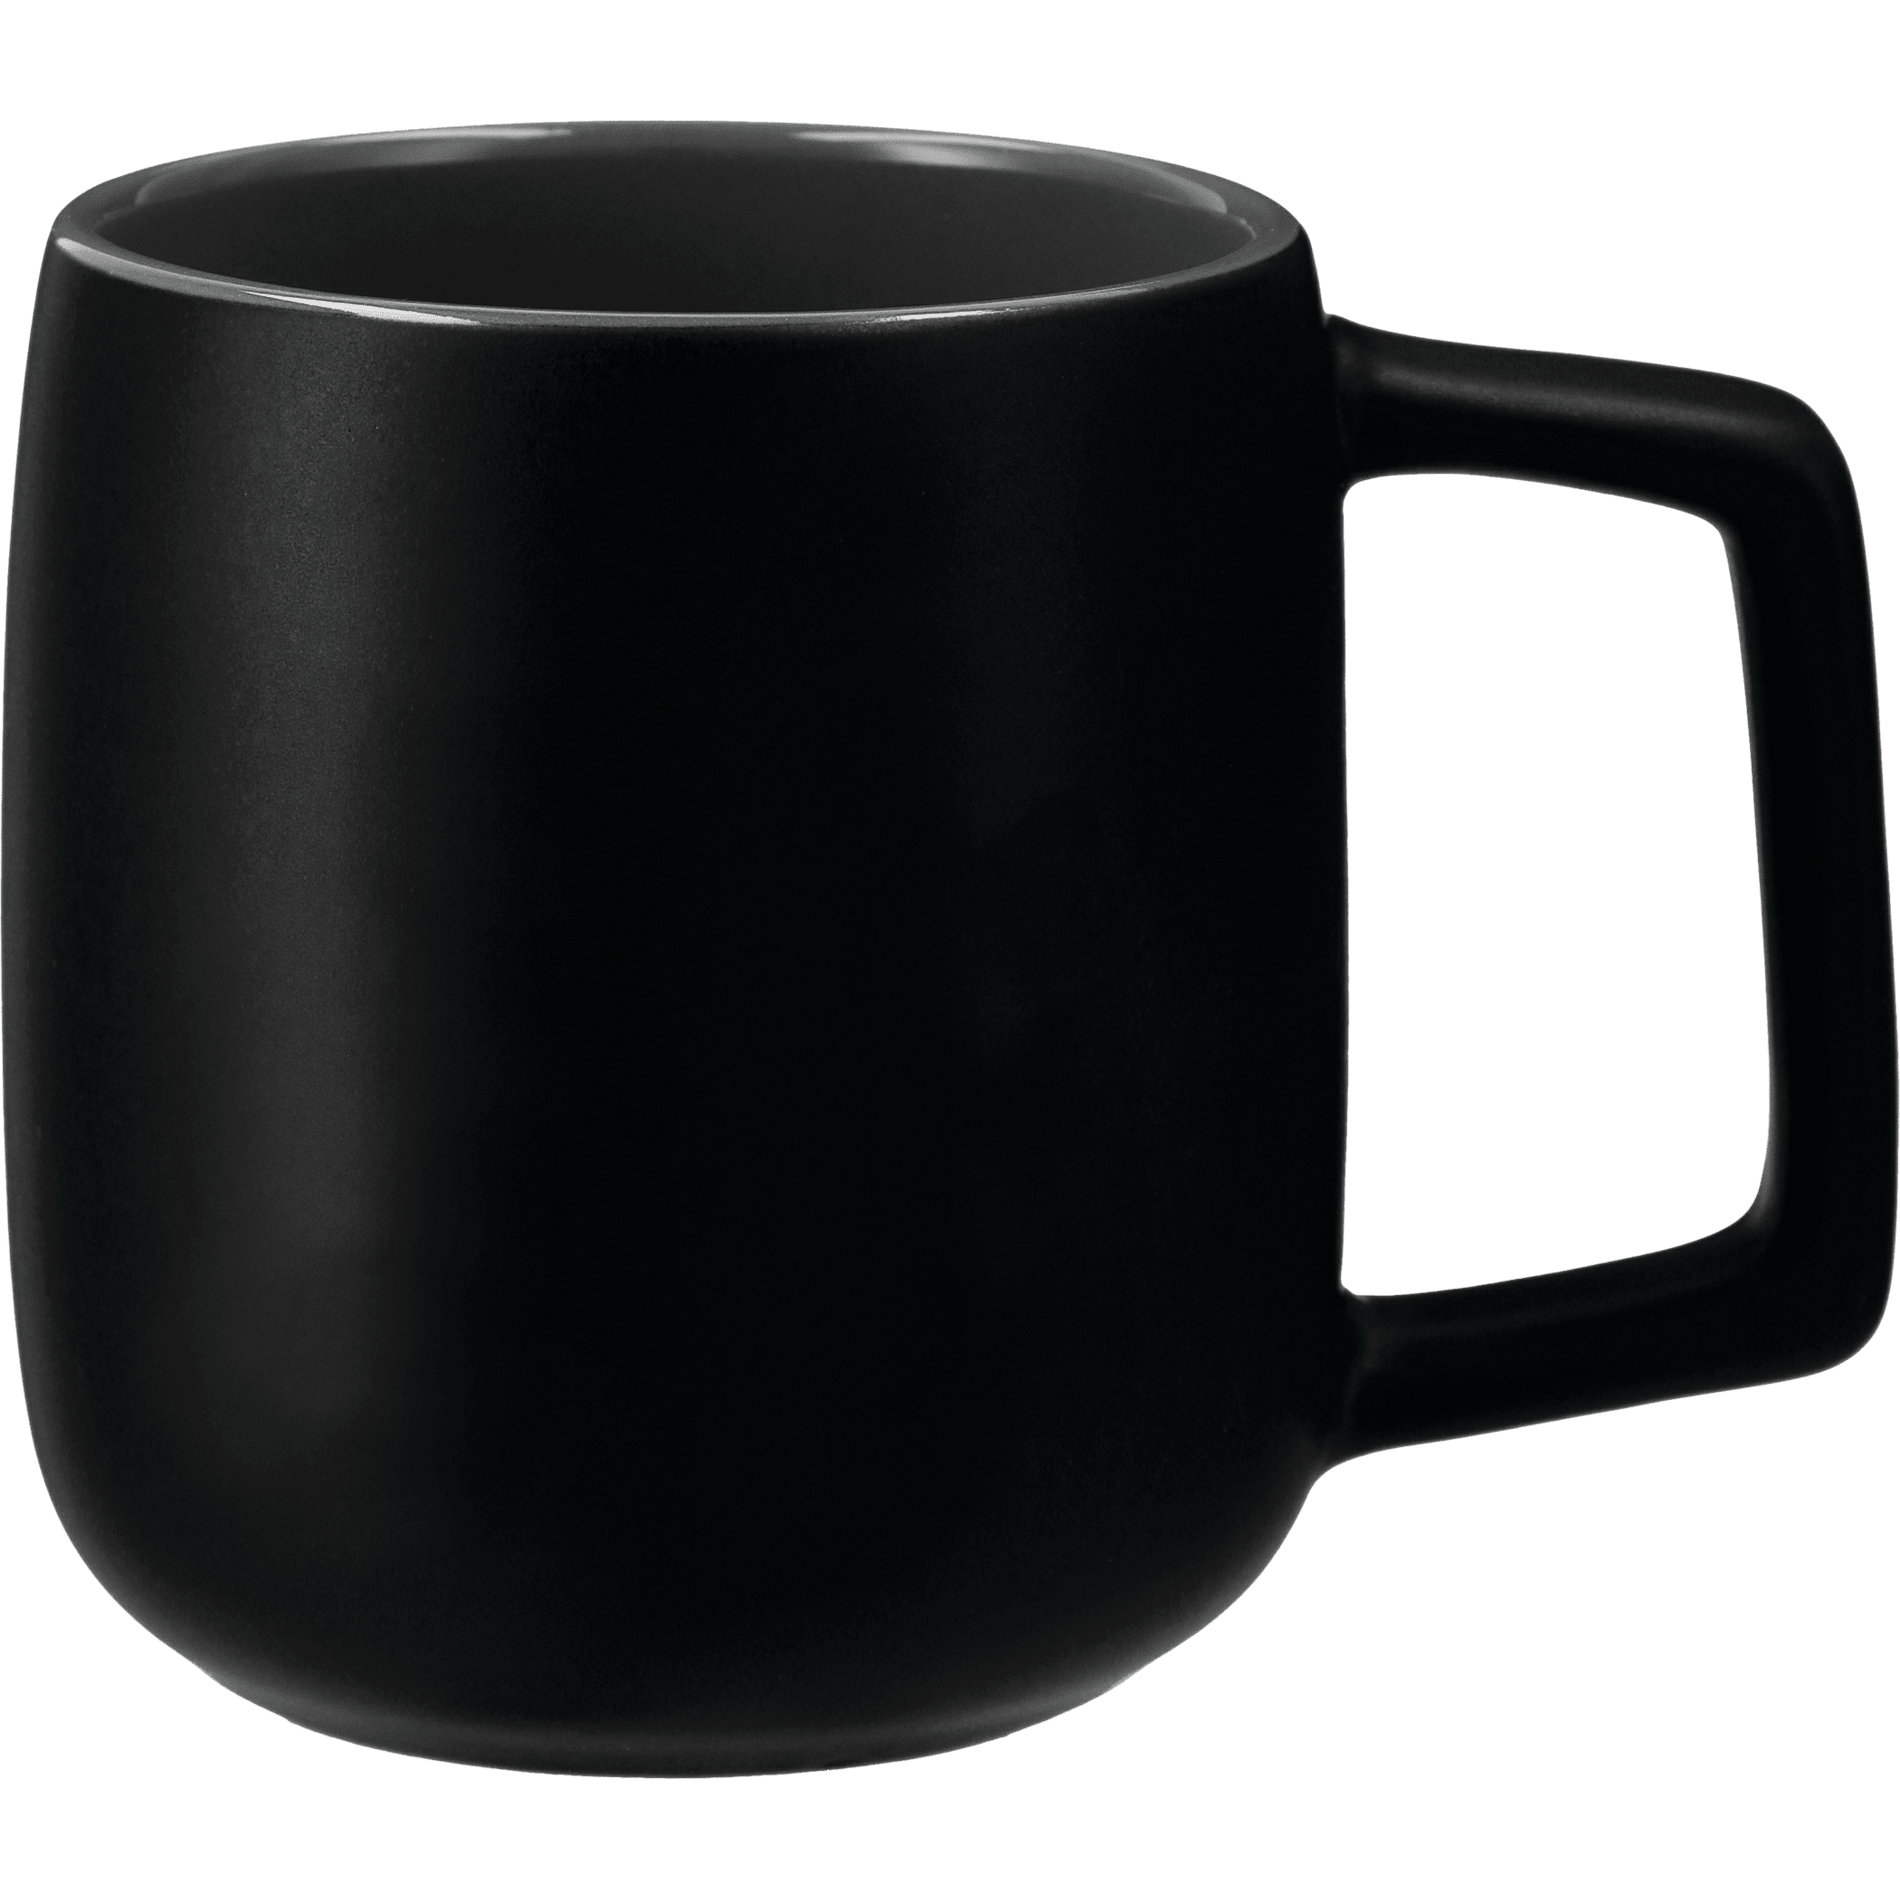 LEEDS 1628-04 - Sienna Ceramic Mug 2 in 1 Gift Set